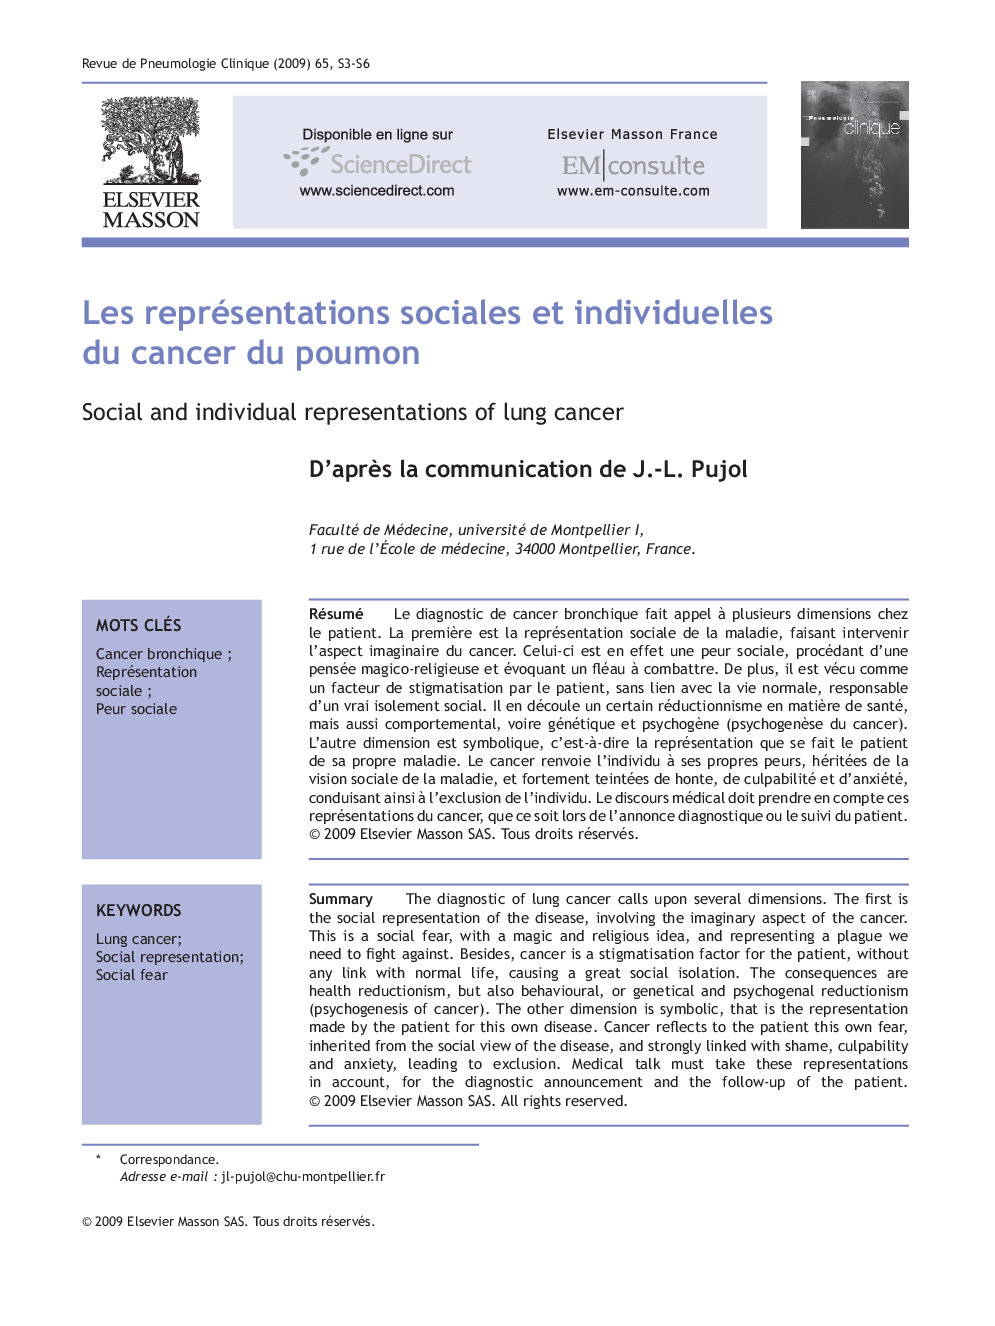 Les représentations sociales et individuelles du cancer du poumon